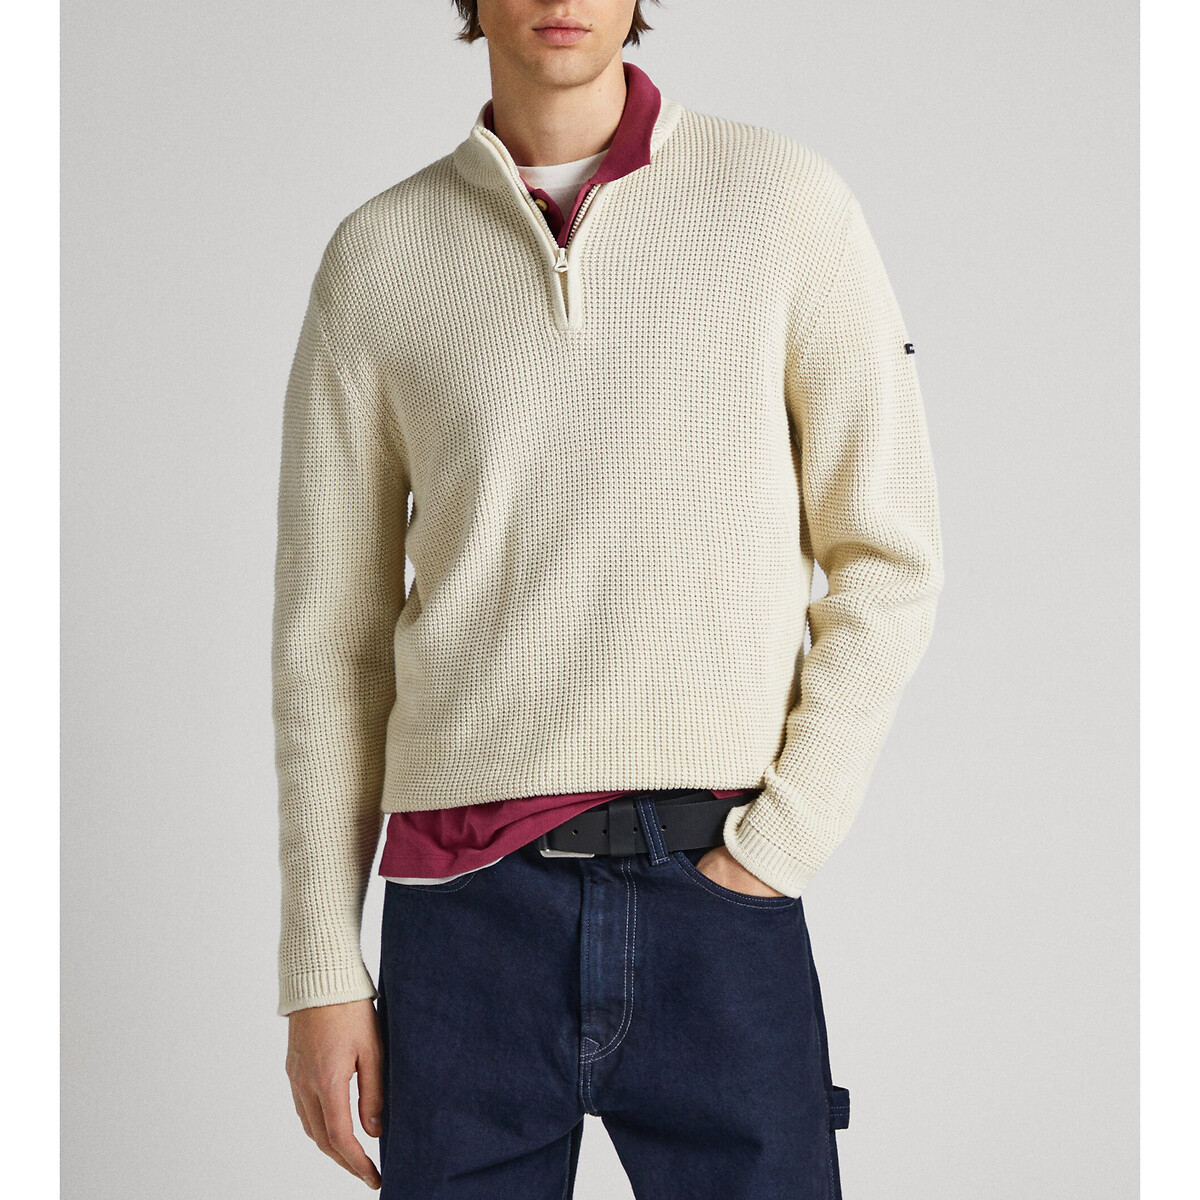 Пуловер с воротником-стойкой на молнии XL бежевый пуловер с воротником стойкой на молнии m синий